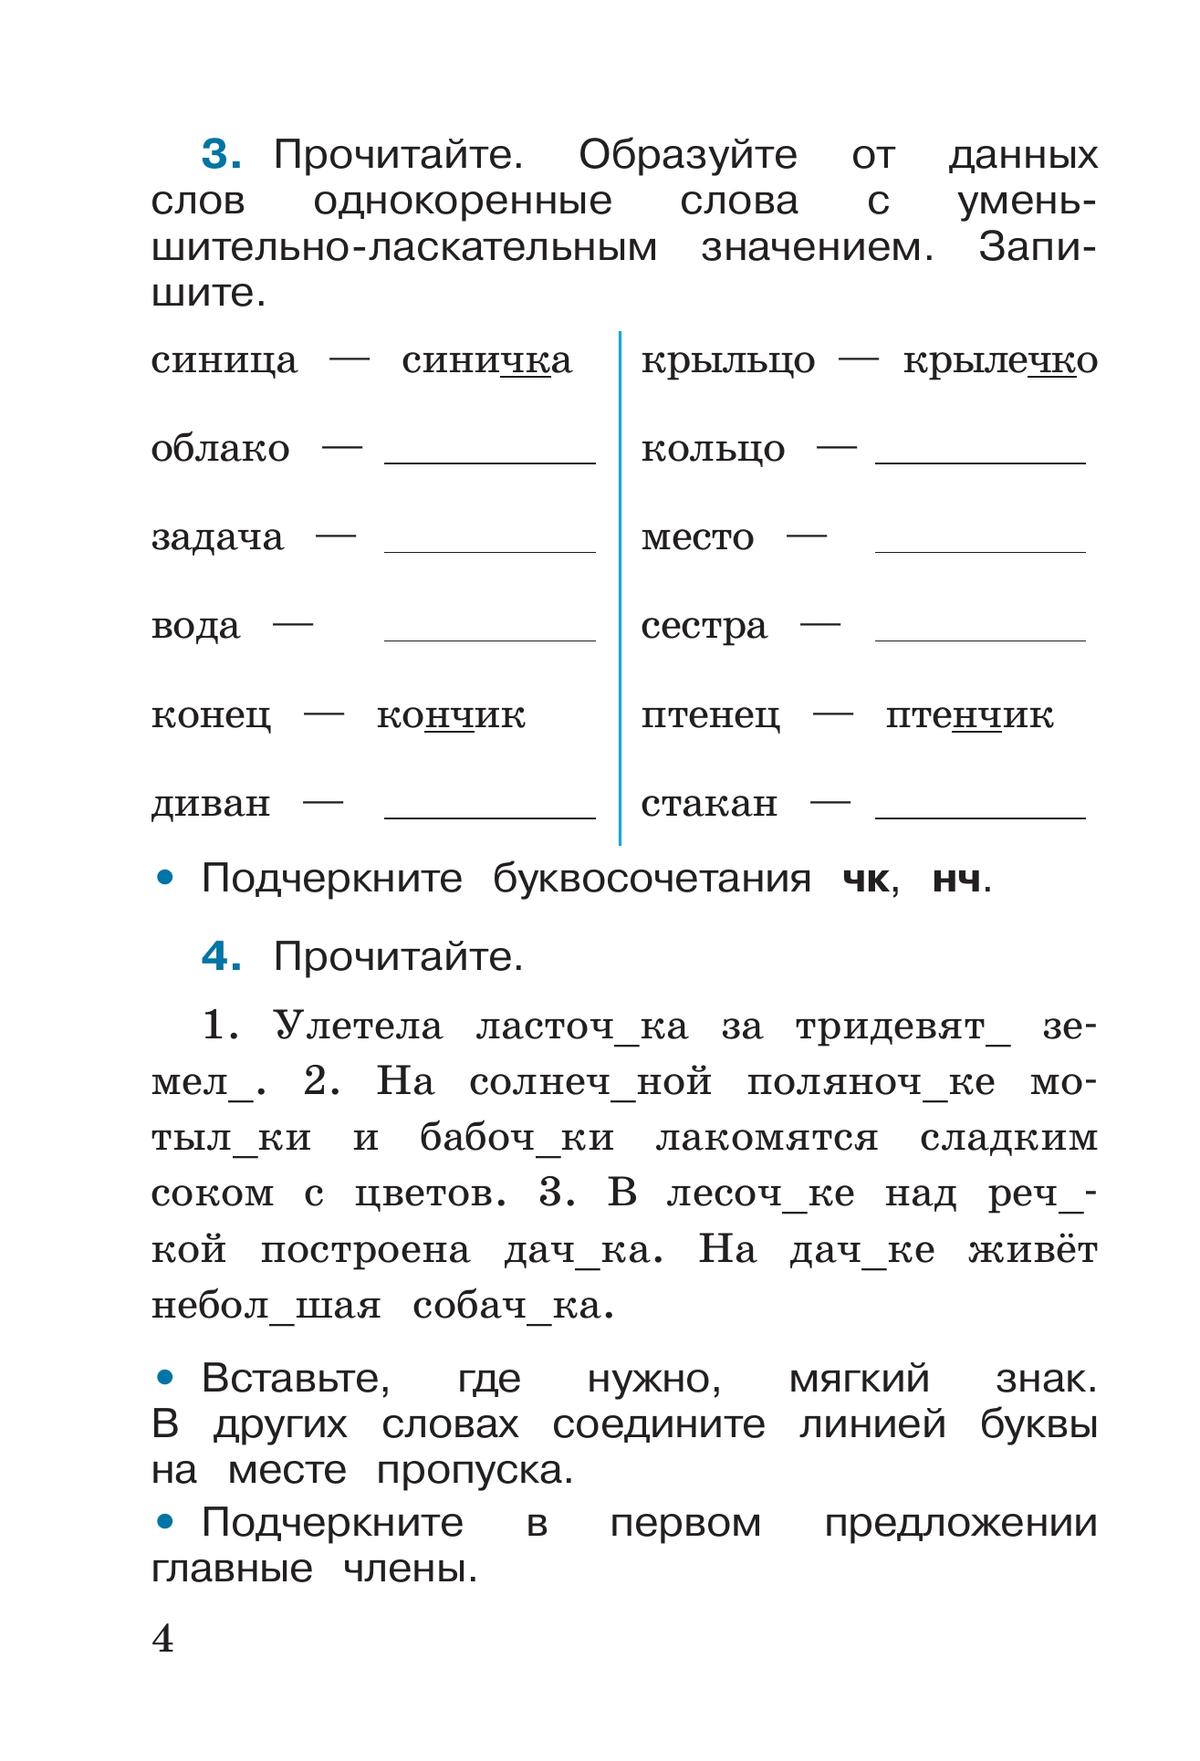 Русский язык. Рабочая тетрадь. 2 класс. В 2 частях. Часть 2 5